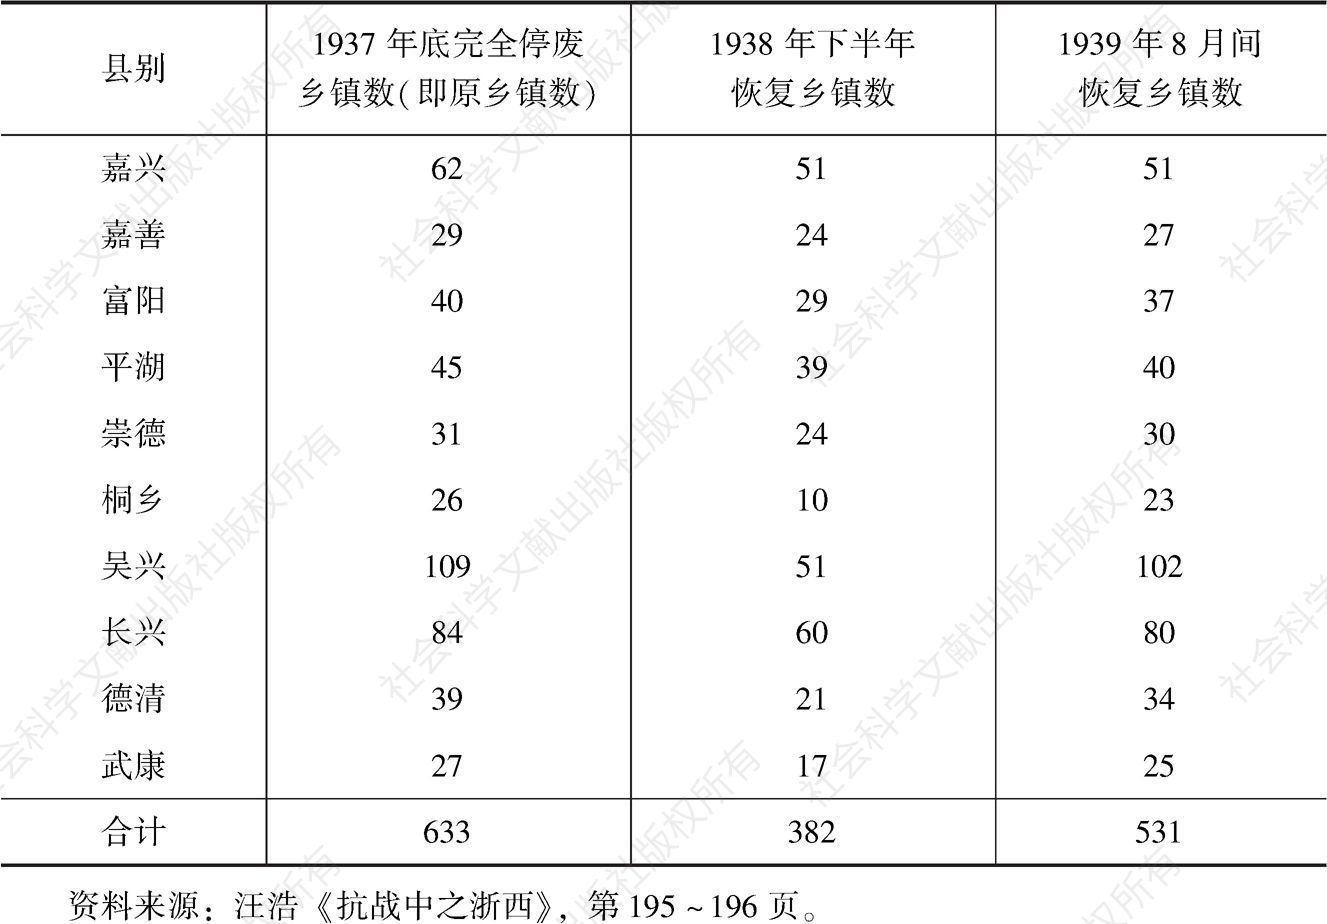 表5-1 1937年底至1939年浙西乡镇停废与恢复情况-续表